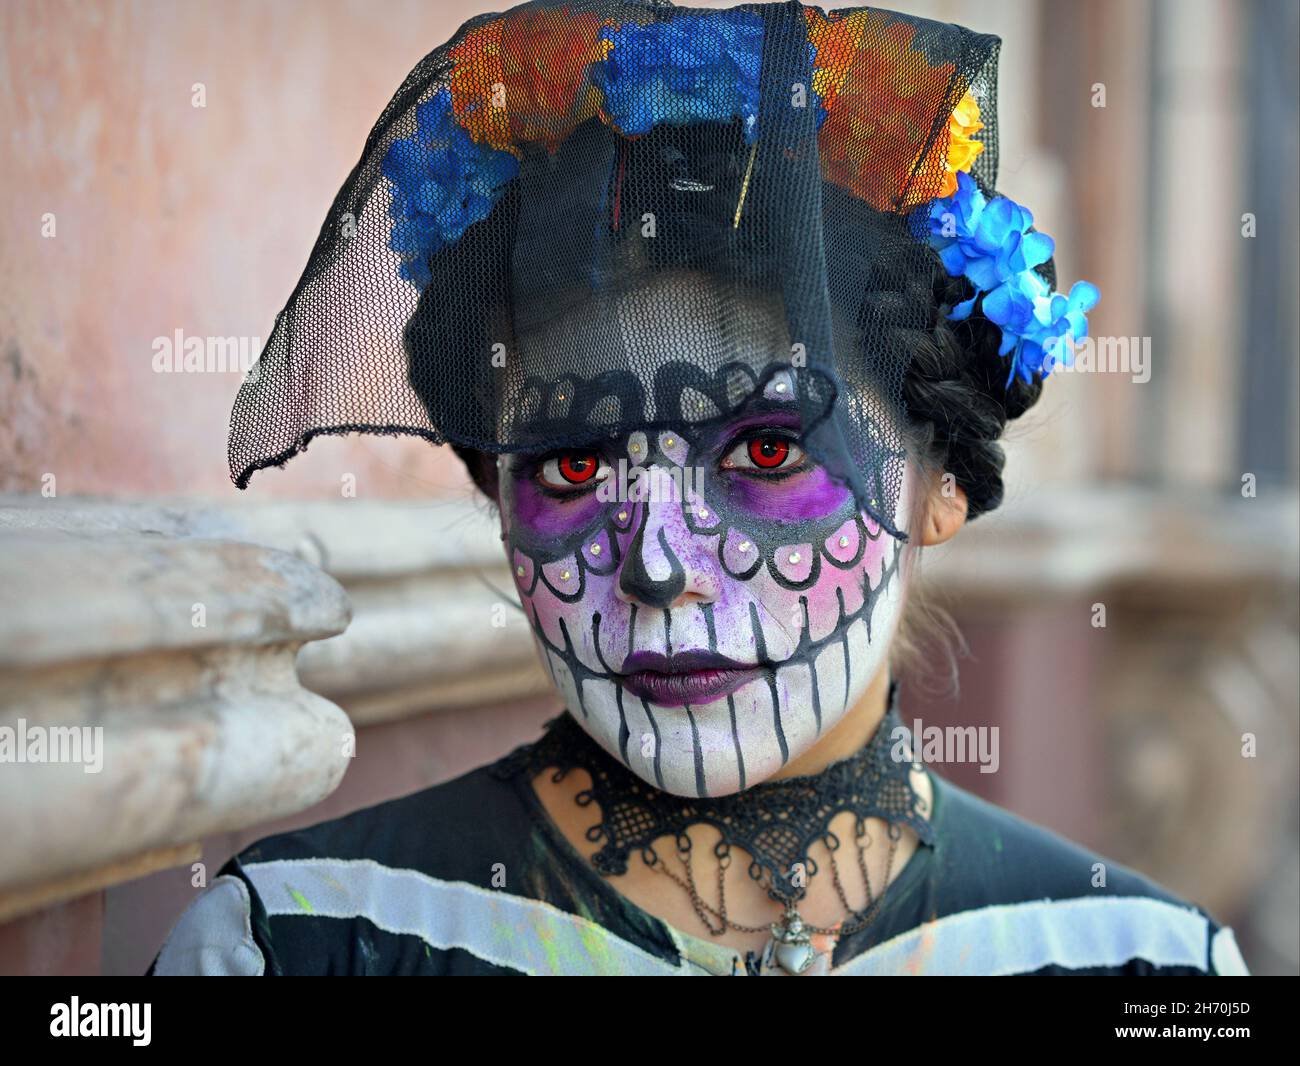 Kostümierte junge Mexikanerin mit gemaltem Gesicht und orangefarbenen Kontaktlinsen trägt am Tag der Toten (Día de los Muertos) einen schwarzen Vogelkäfig-Schleier. Stockfoto